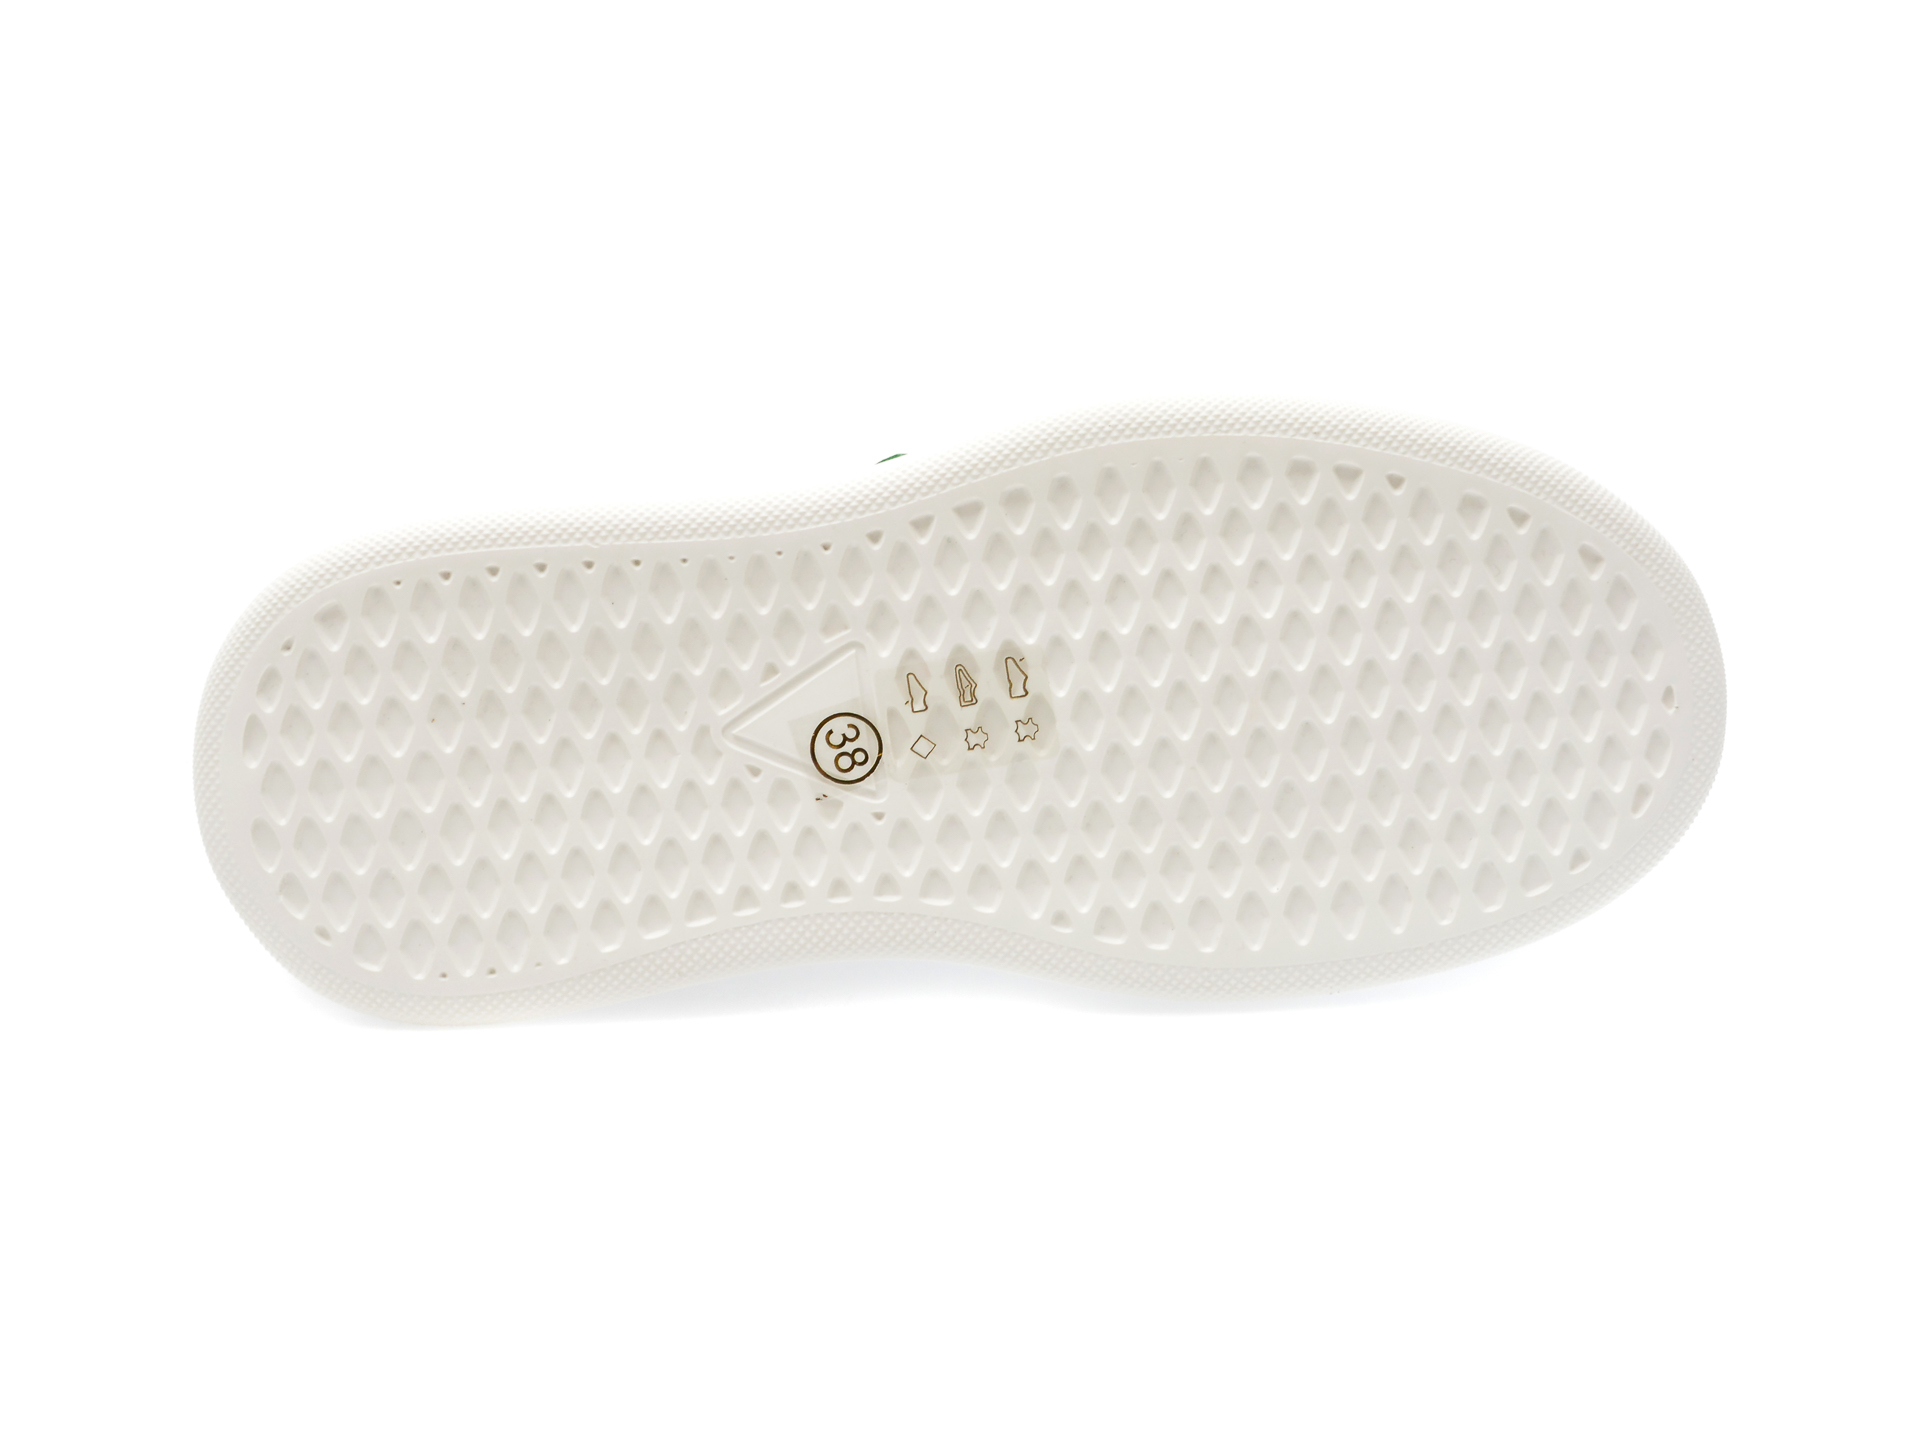 Pantofi GRYXX albi, YX551, din piele naturala